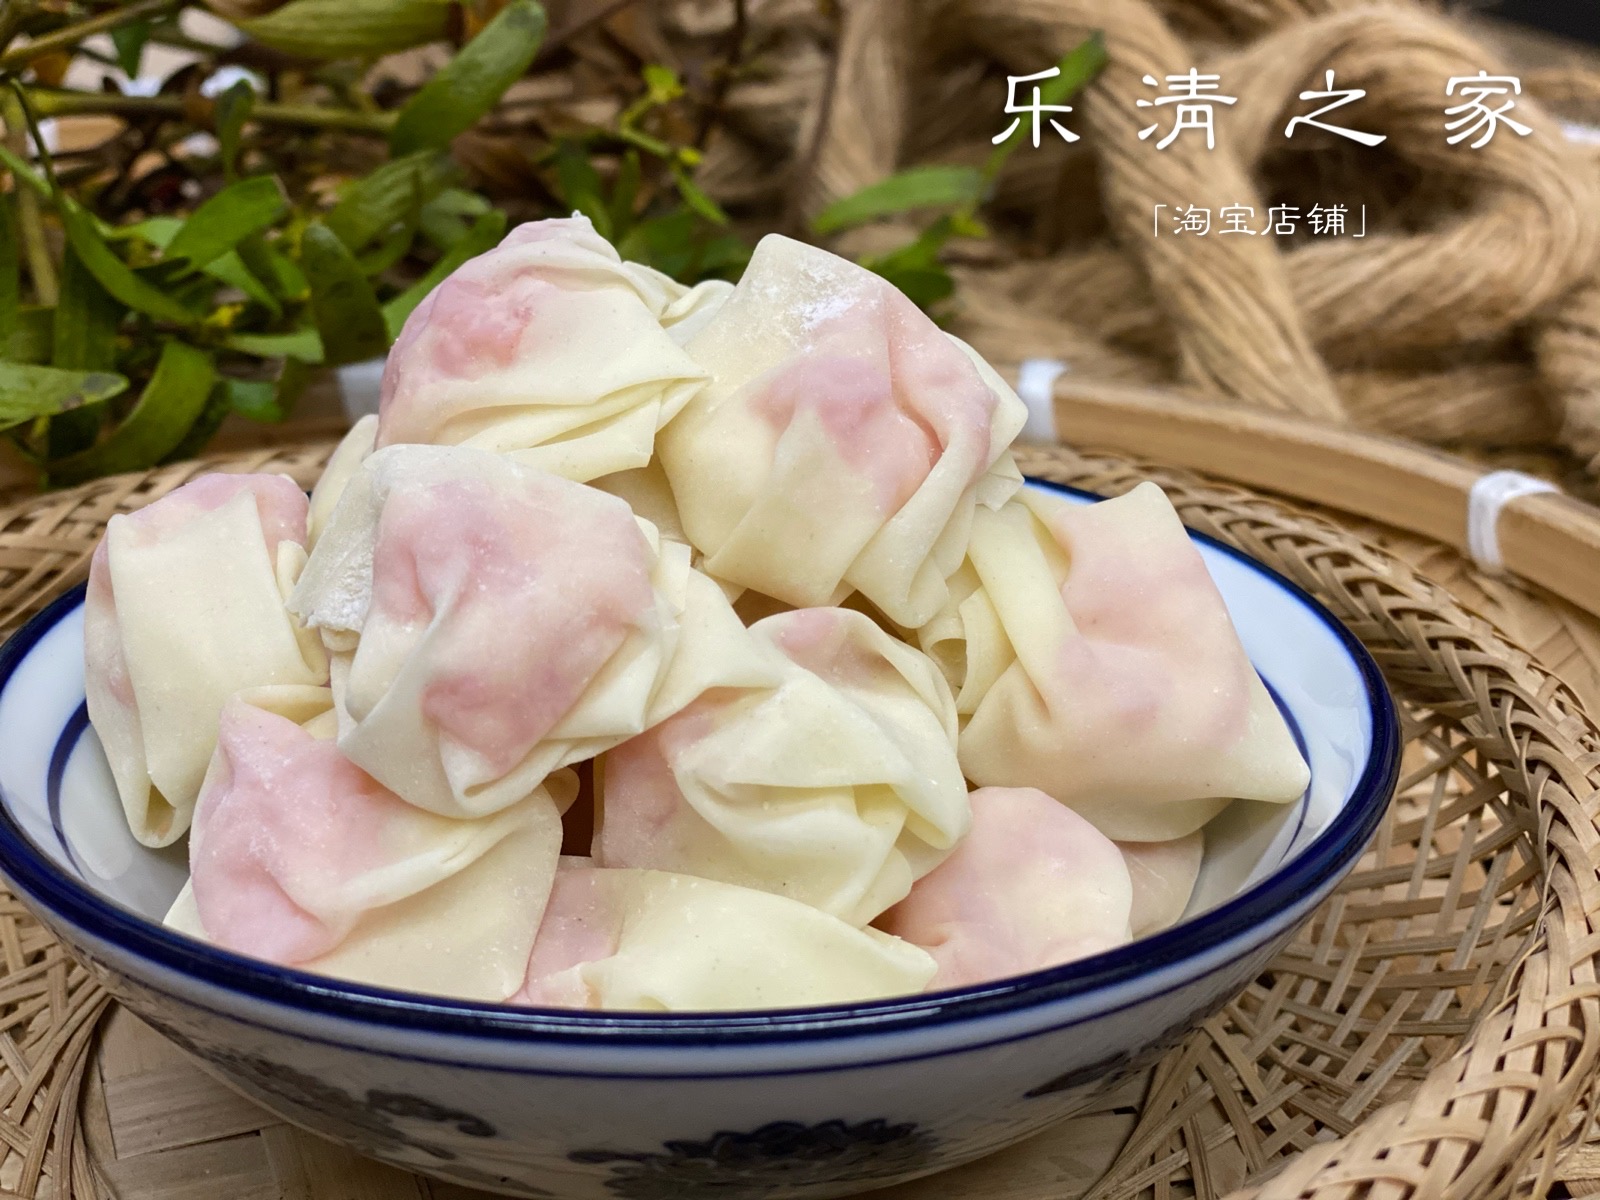 【鲜馄饨25朵】温州柳市高阳传统手打皮生鲜肉小馄饨25朵乐清之家